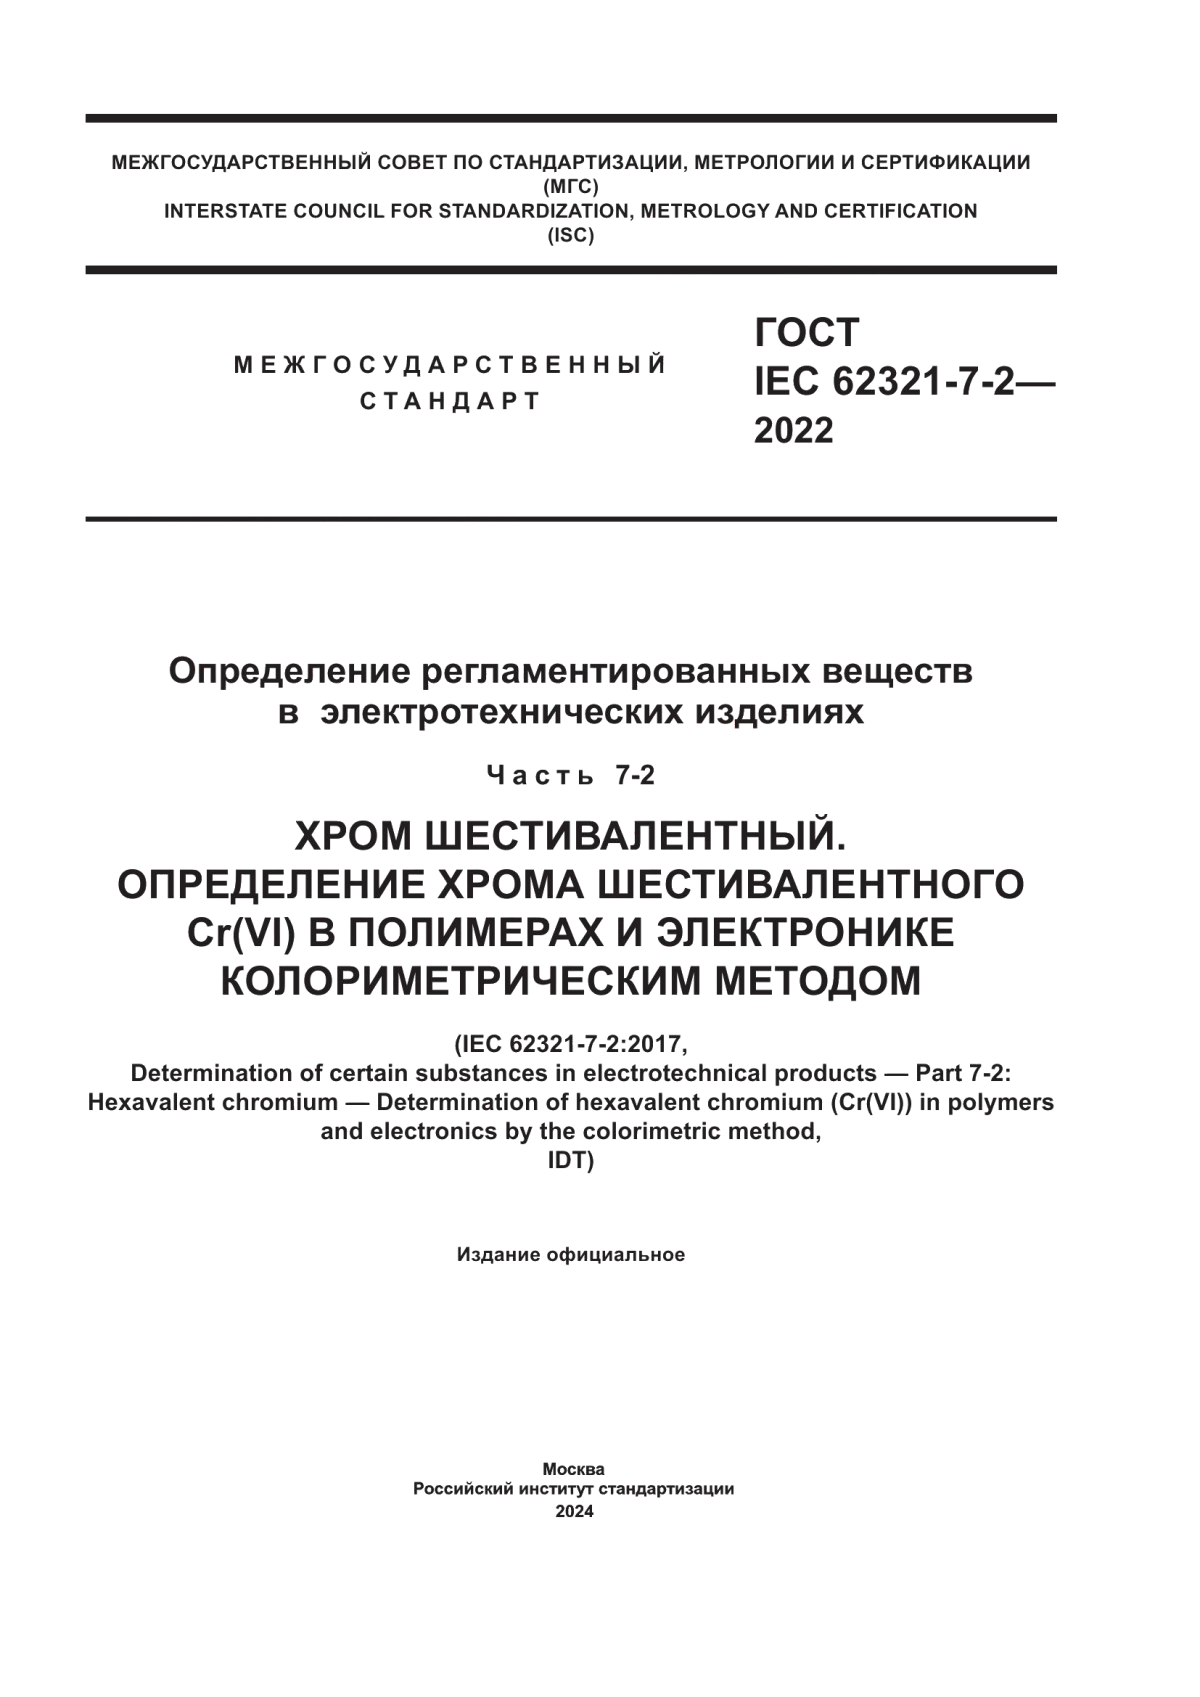 ГОСТ IEC 62321-7-2-2022 Определение регламентированных веществ в электротехнической продукции. Часть 7-2. Хром шестивалентный. Определение хрома шестивалентного Cr(VI) в полимерах и электронике колориметрическим методом